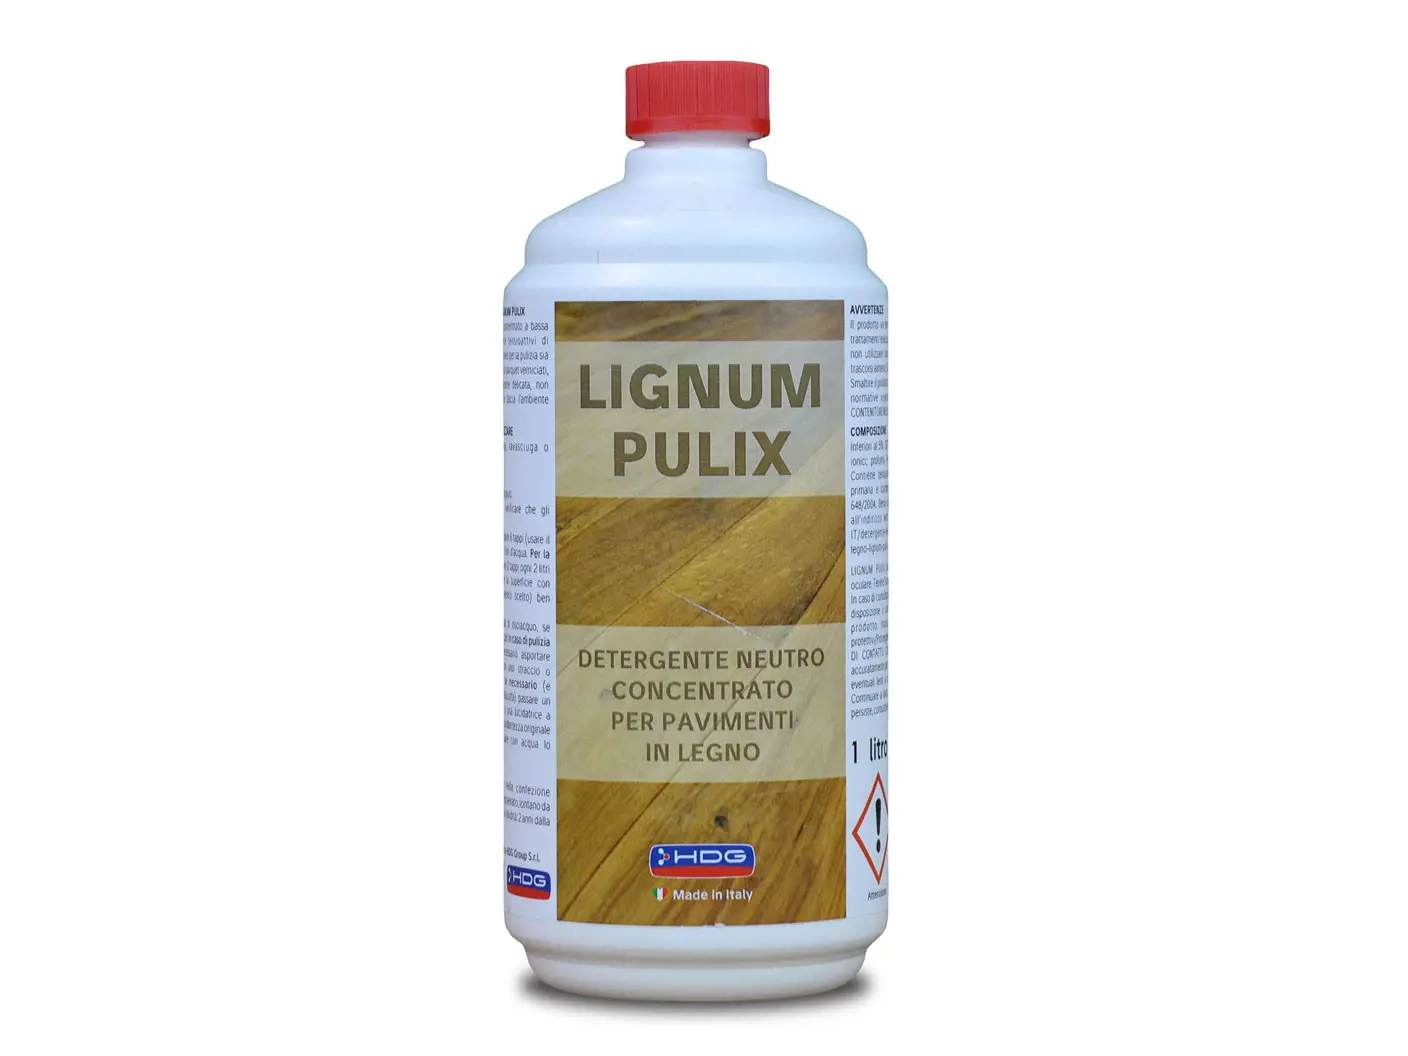 Lignum-pulix-1-litro.jpg